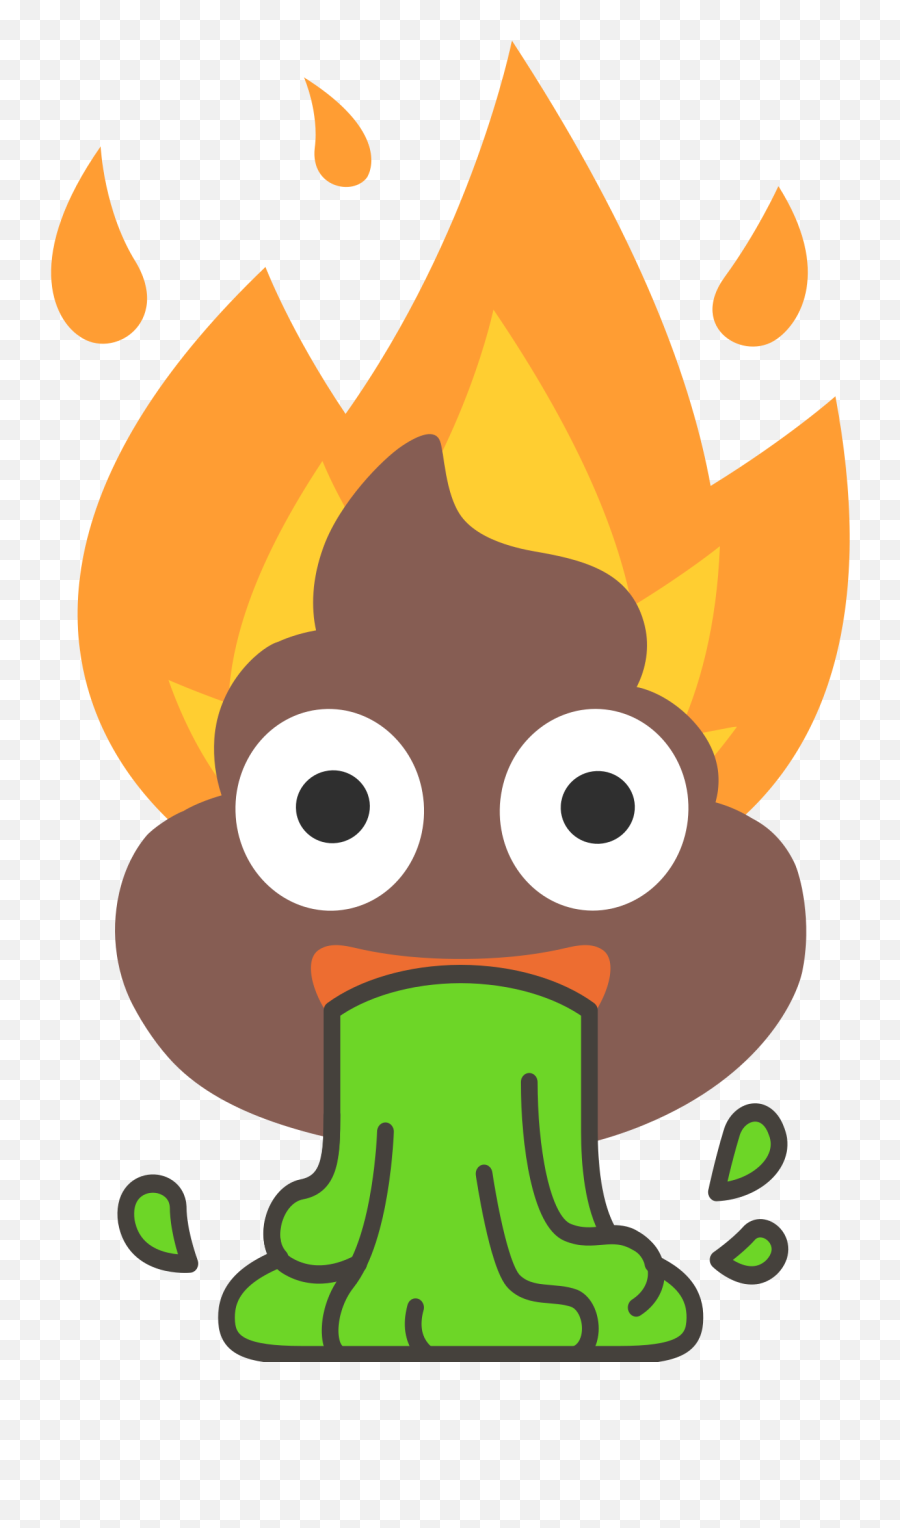 Flaming Poop Vomit Emoji - Poop Emoji On Fire,Puking Emoji